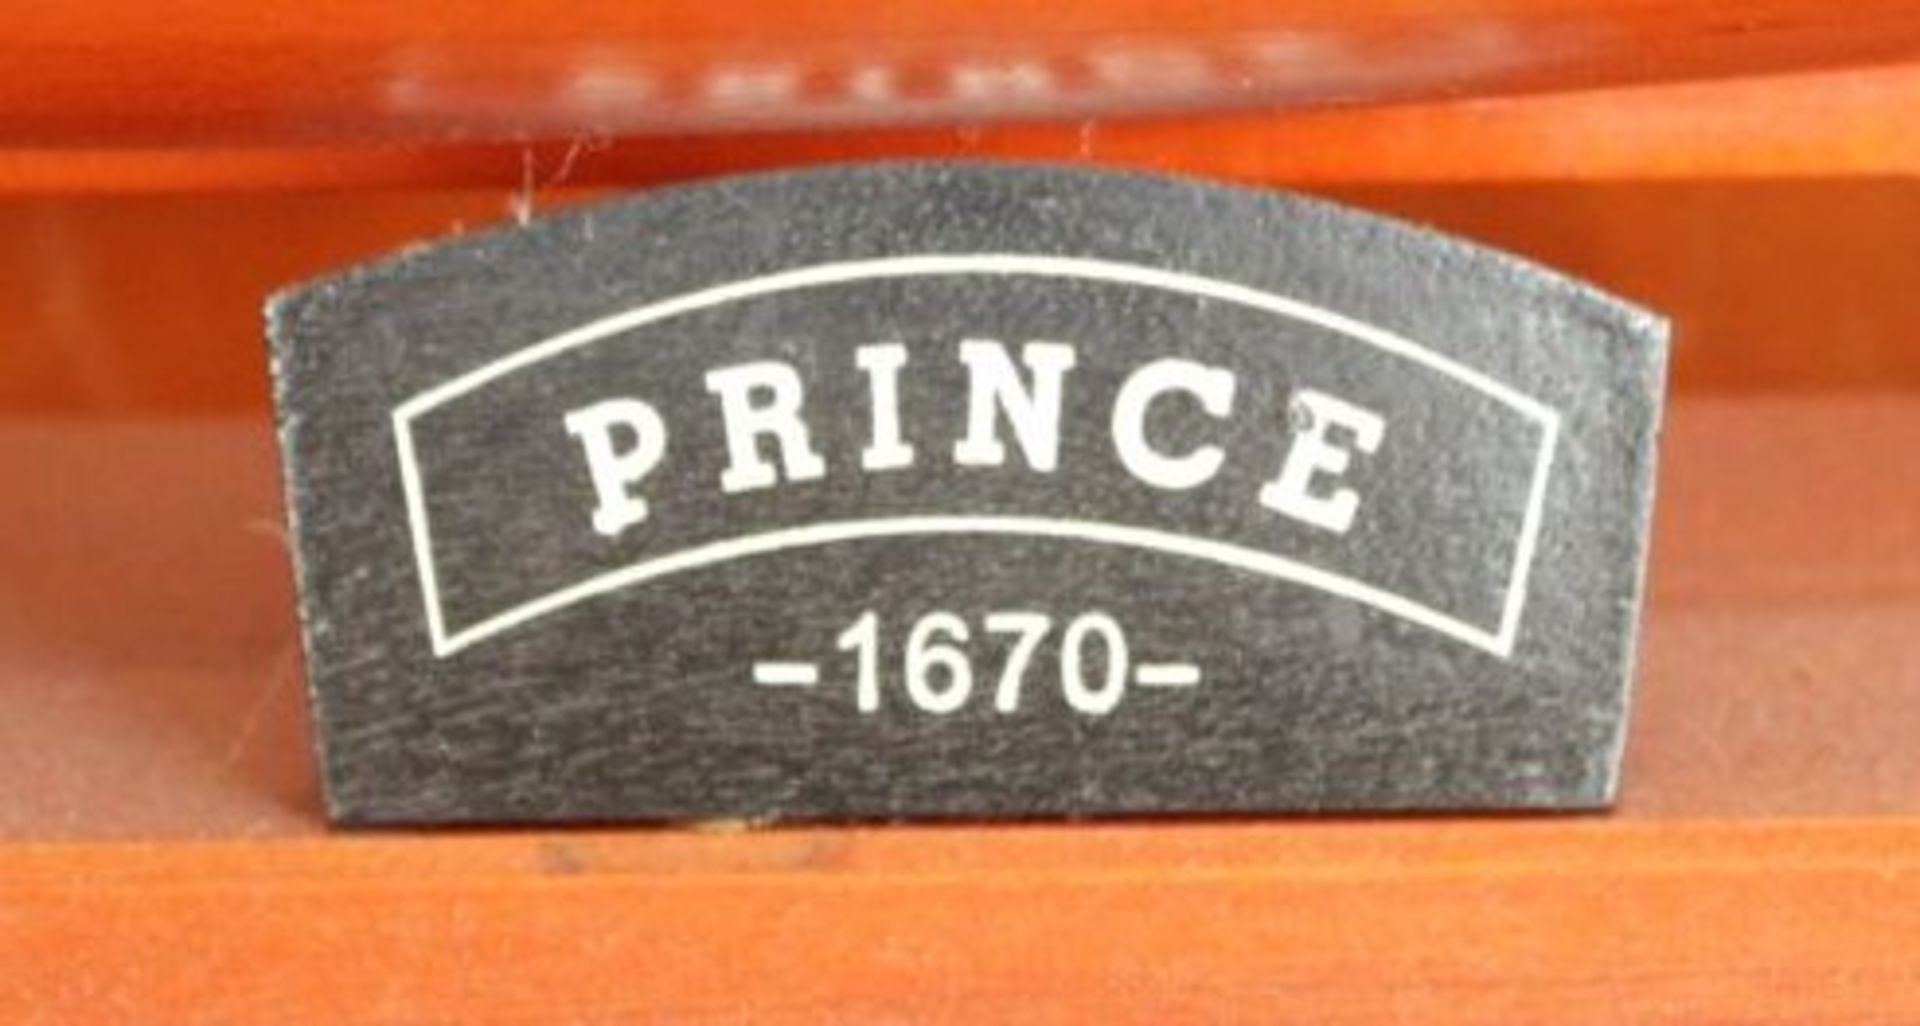 Schiffsmodell "Prince 1670" auf Stand, Holz, H-95cm L-110cm B-20vm. KEIN VERSAND MÖGLICH - Image 2 of 6